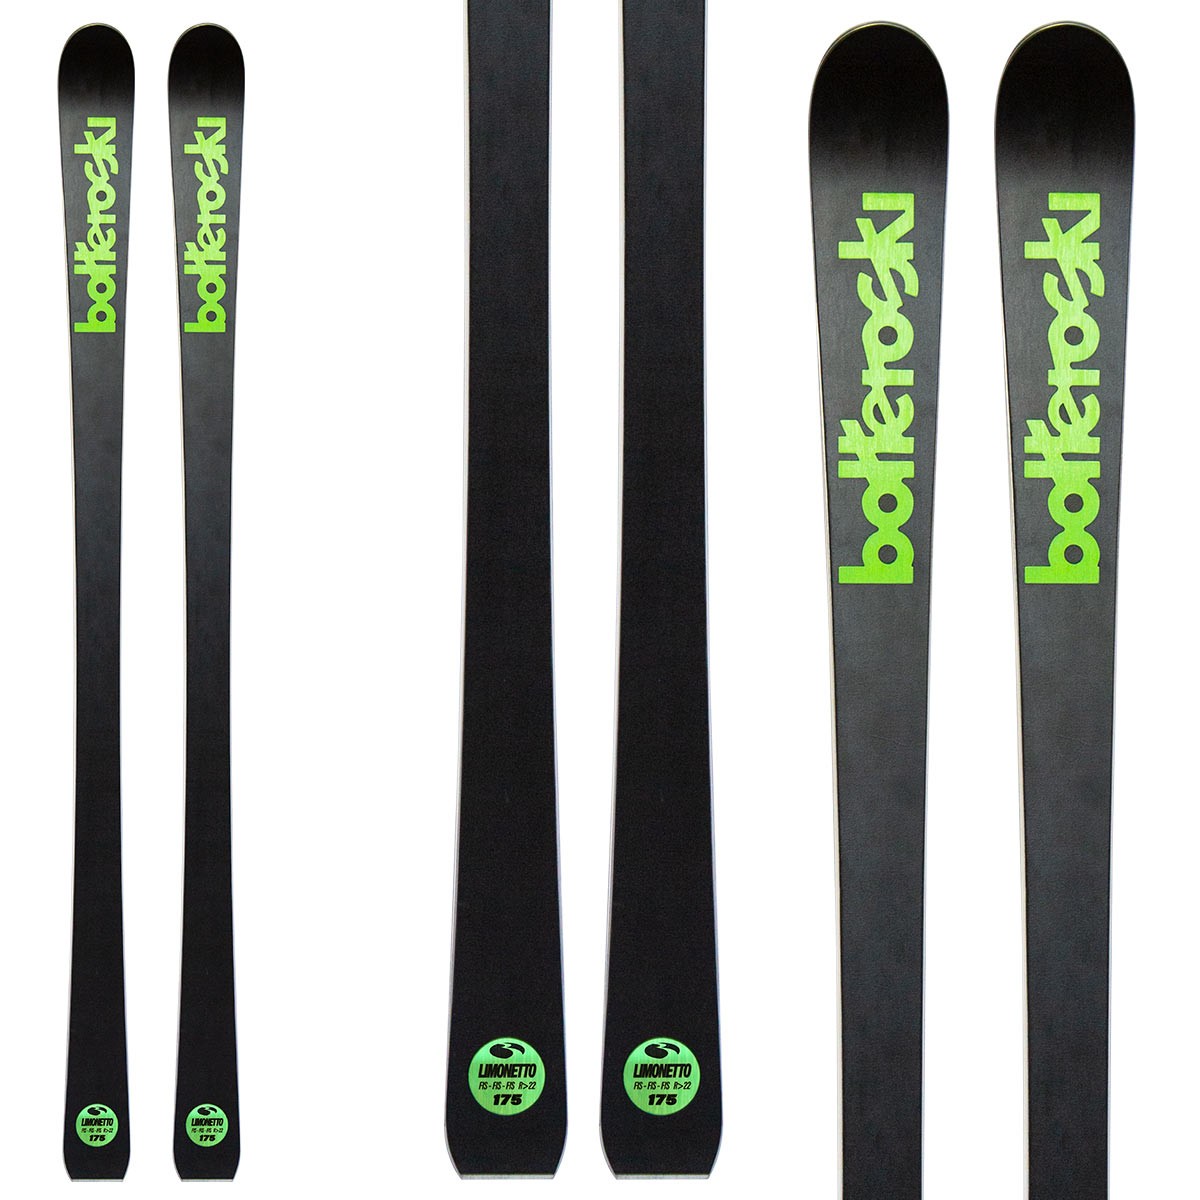  Sci Bottero Ski Limonetto con attacchi V412 con piastra WC Race Duo V10 (Colore: nero-verde, Taglia: 140) 